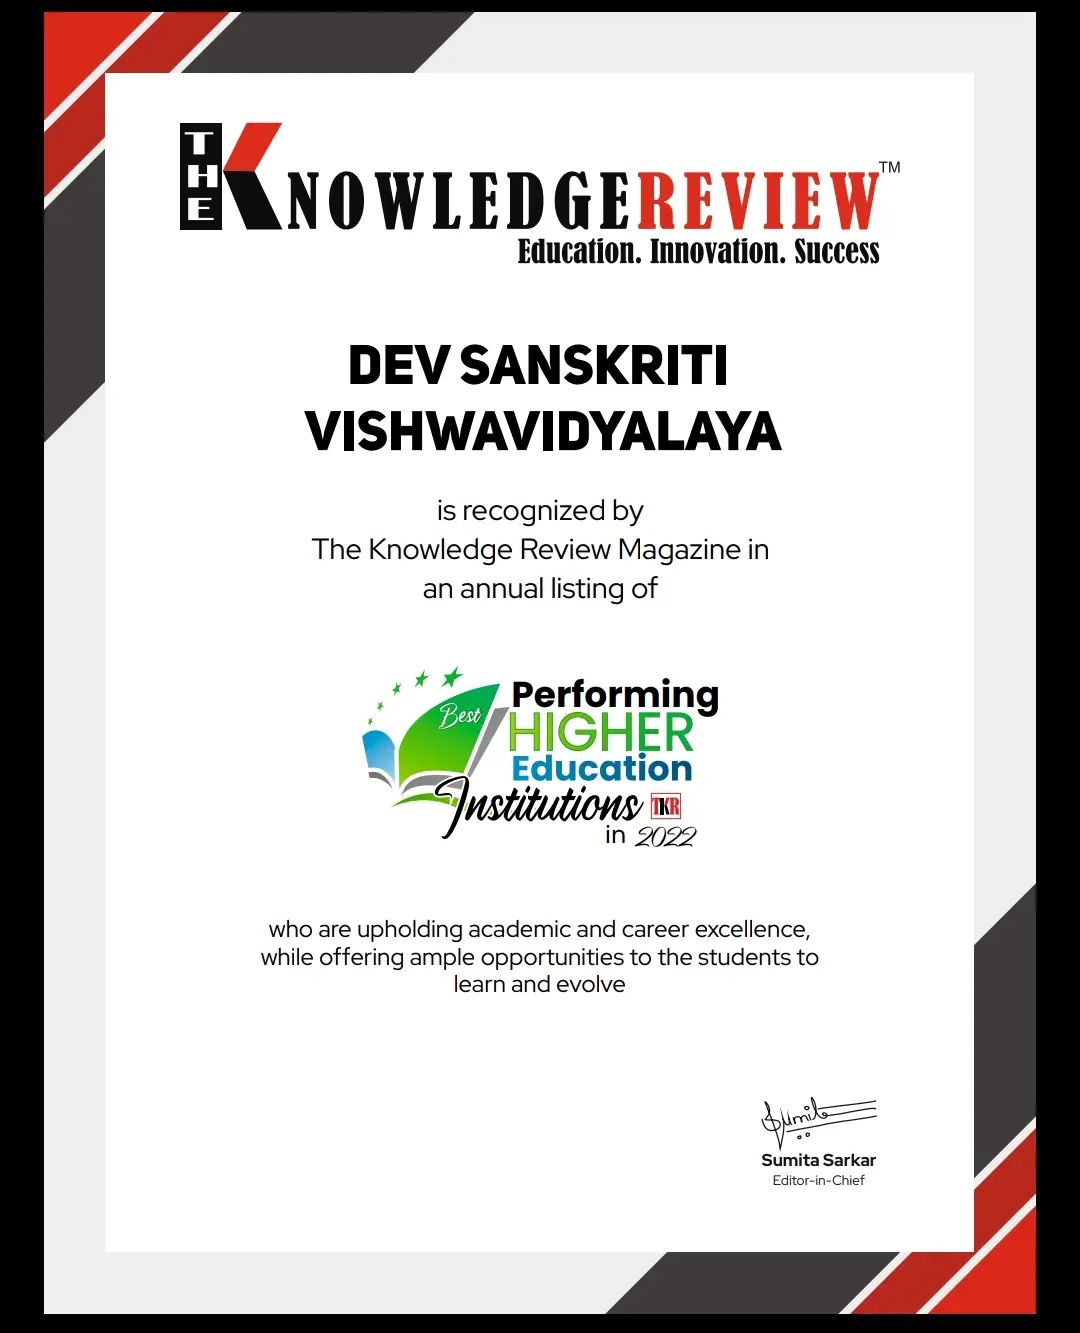 Dev Sanskriti Vishwavidyalaya in ‘The Knowledge Review Magazine’ as “Best Performing Higher Education Institutions in 2021”